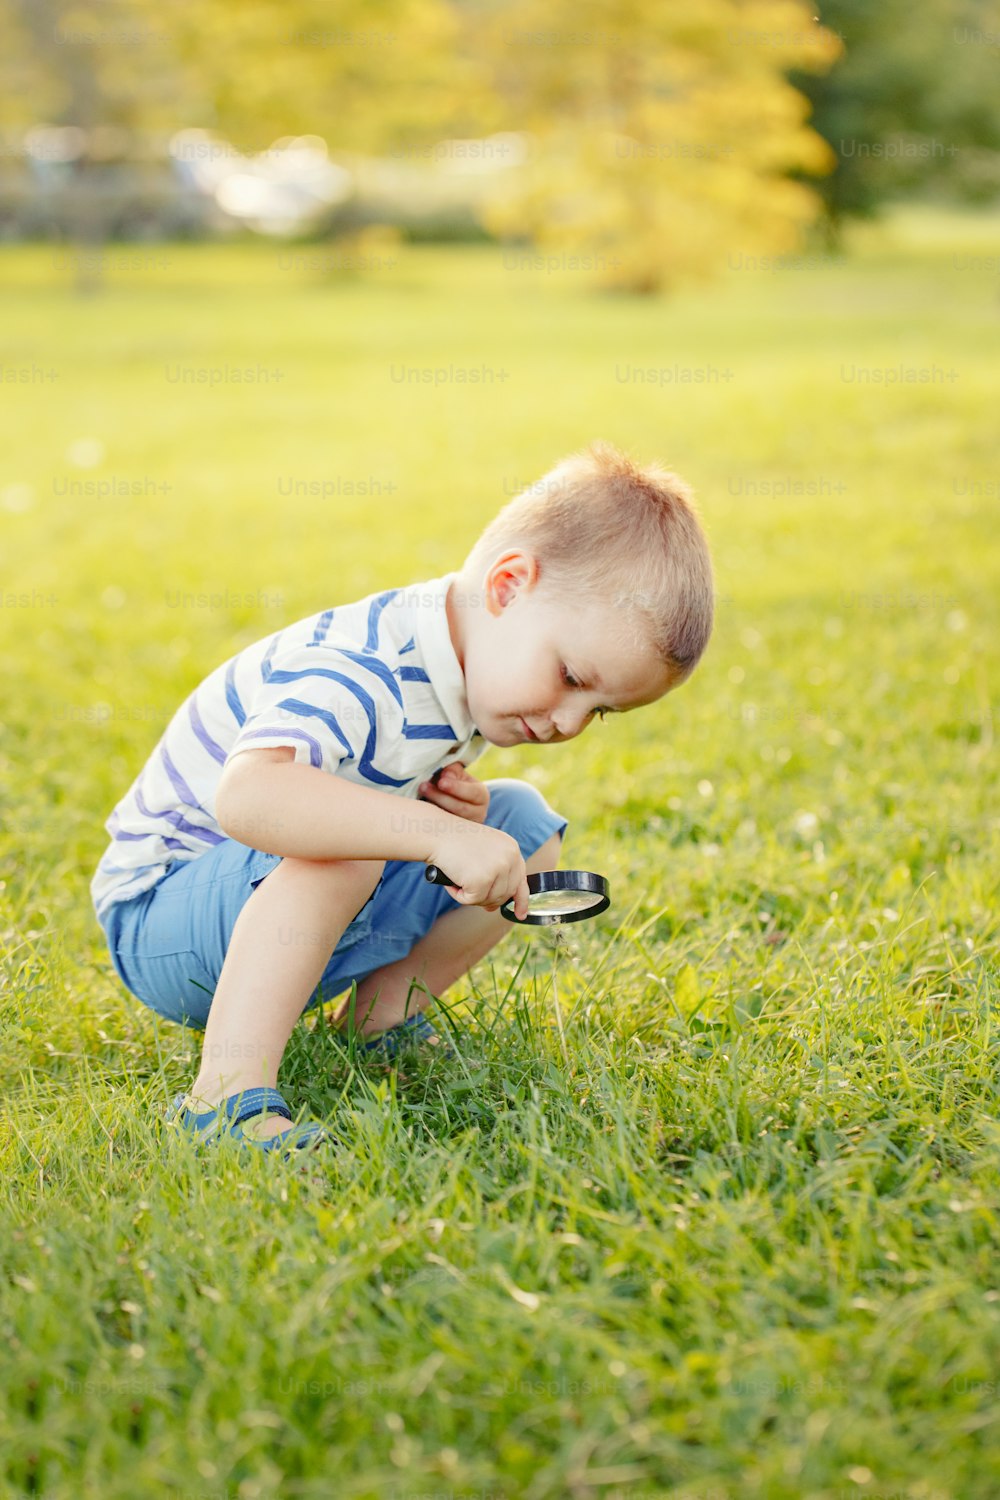 Bonito adorável menino caucasiano criança olhando para plantas grama flor no parque através de lupa. Garoto com lupa estudando aprendendo a natureza lá fora. Conceito de educação em ciências naturais infantis.